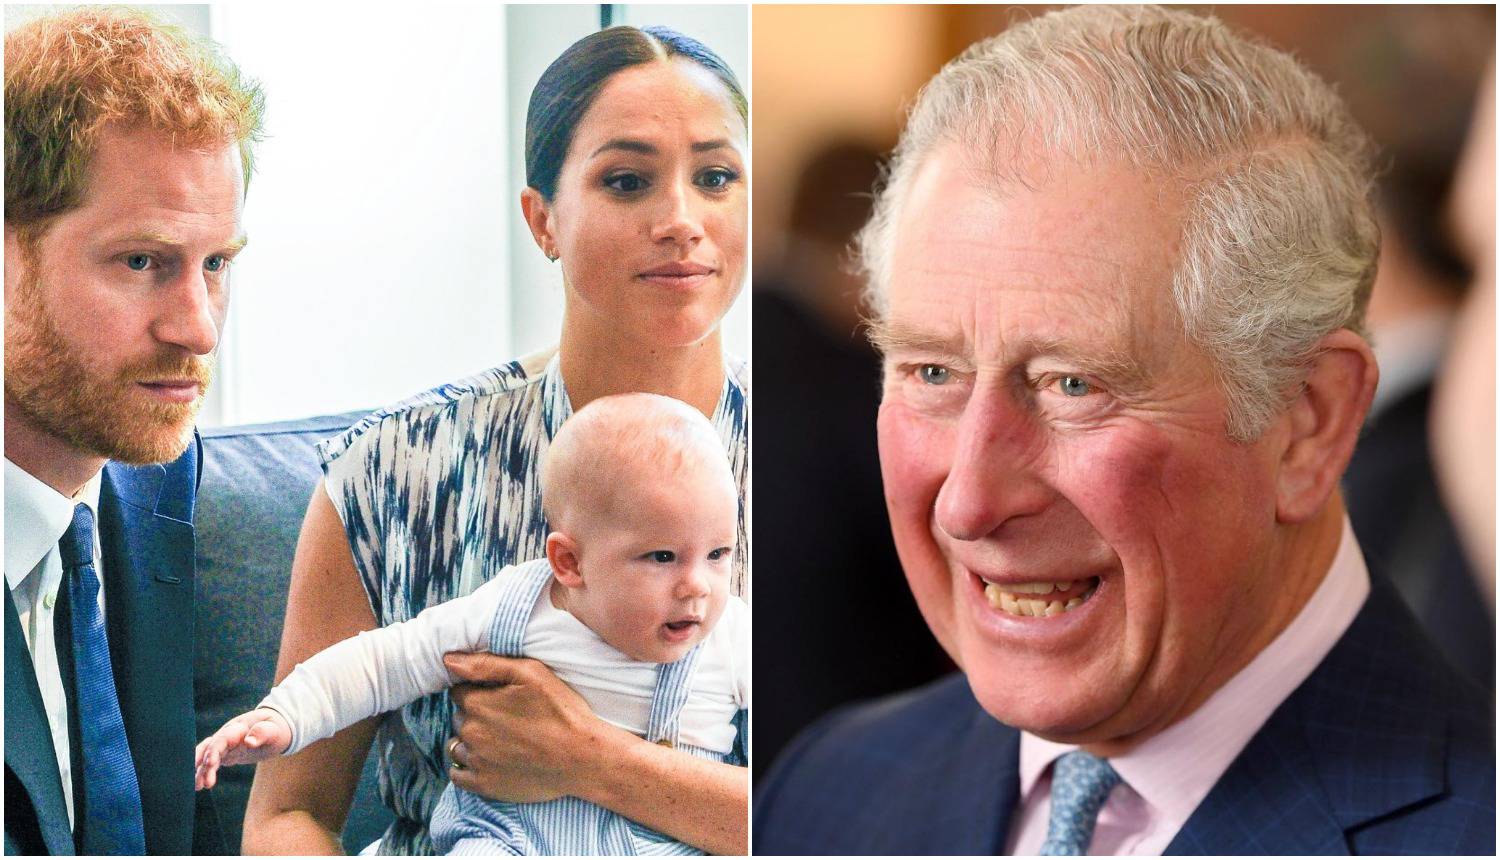 Princ Charles je negirao da se raspitivao o boji kože unuka Archieja: 'To je izmišljotina!'